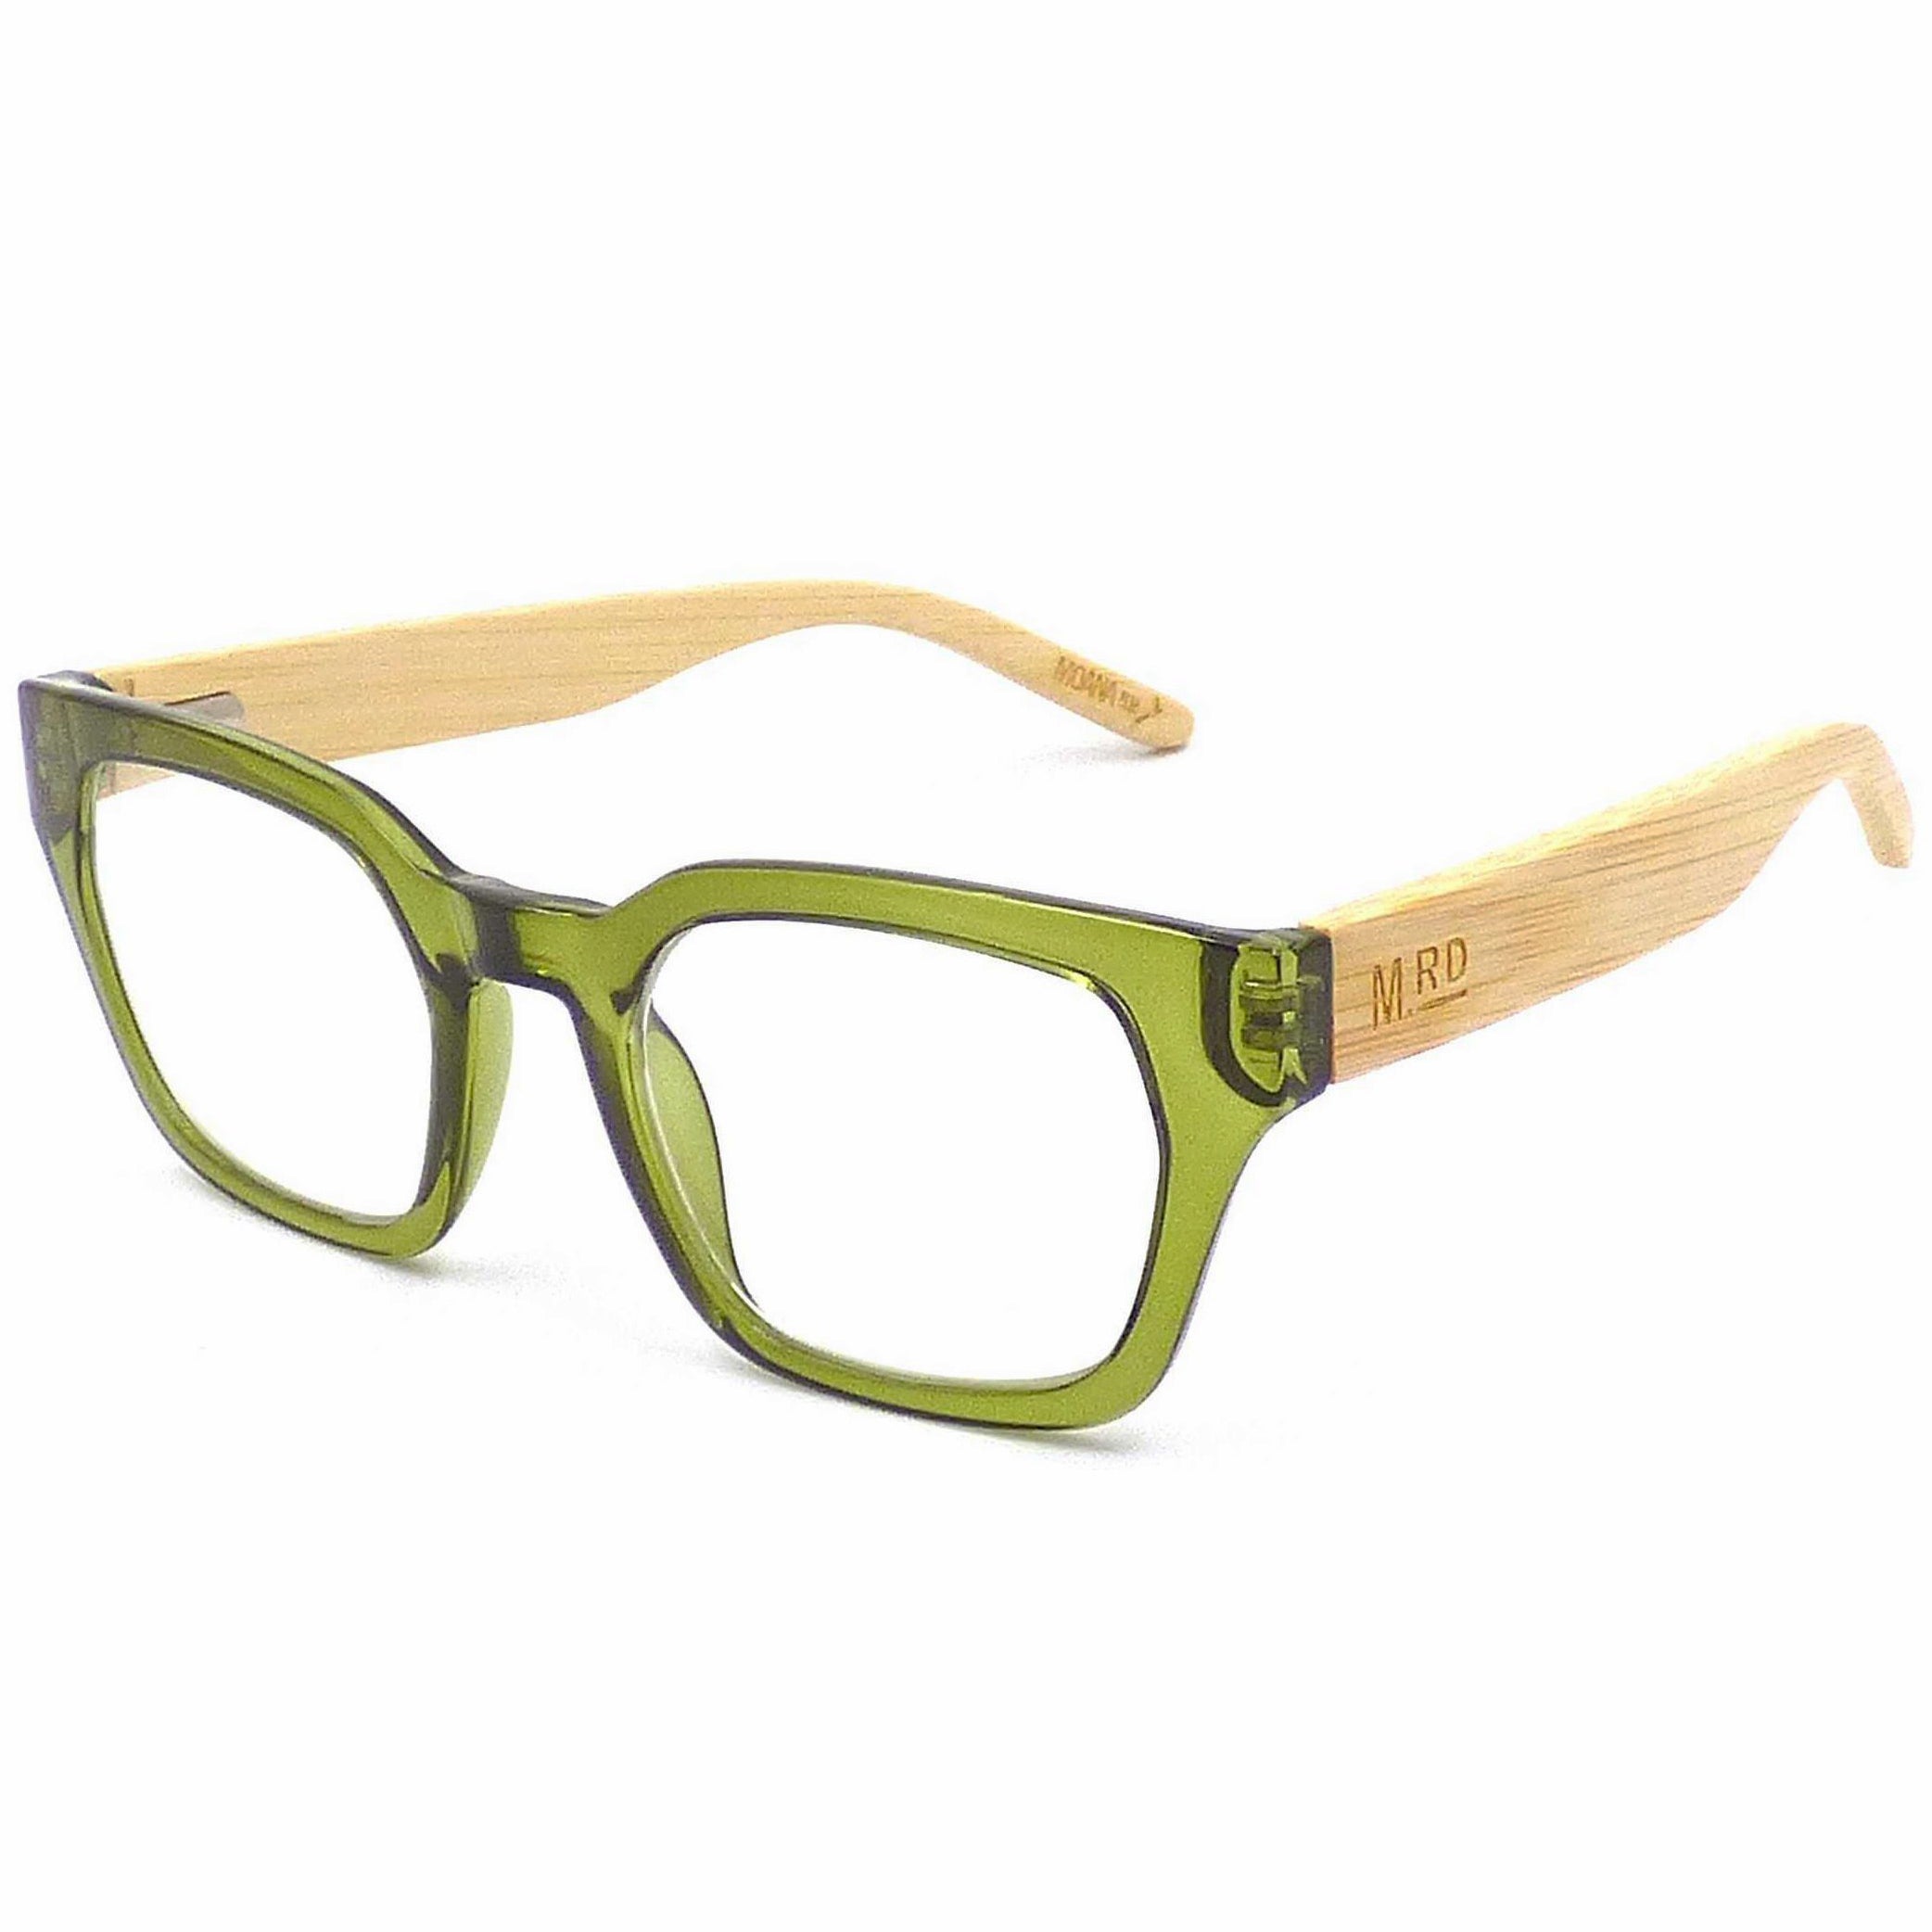 Moana Road Reading Glasses - Green +2.5